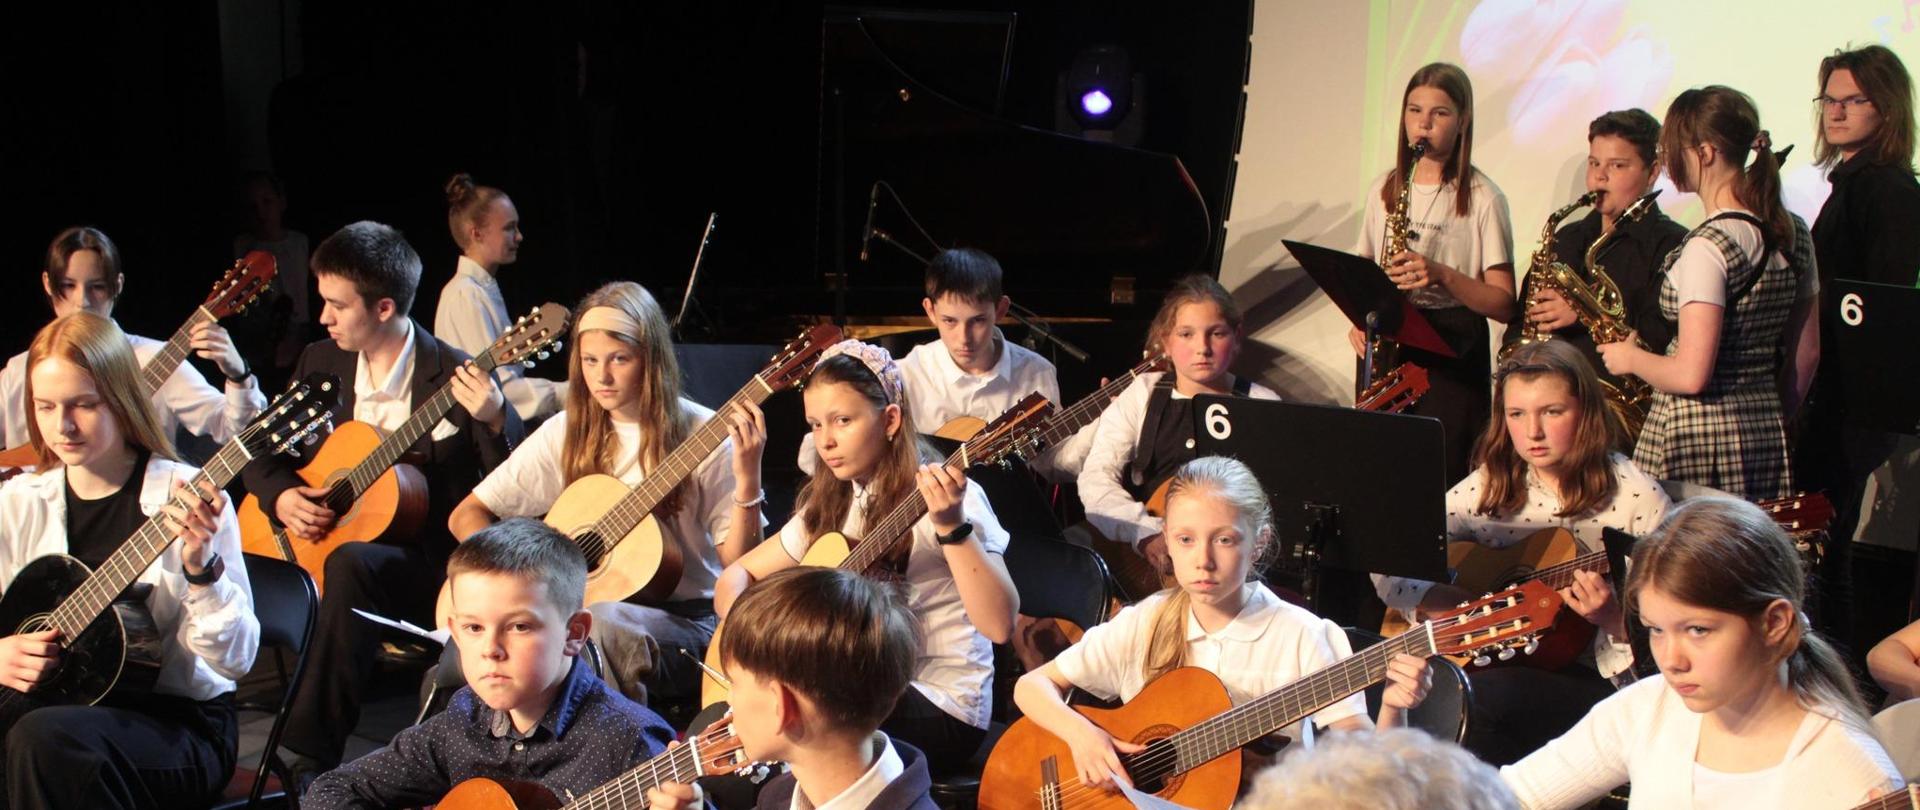 Uczniowie tworzący zespół siedzą, grając na gitarach. Z tyłu stoją uczniowie grający na saksofonach.